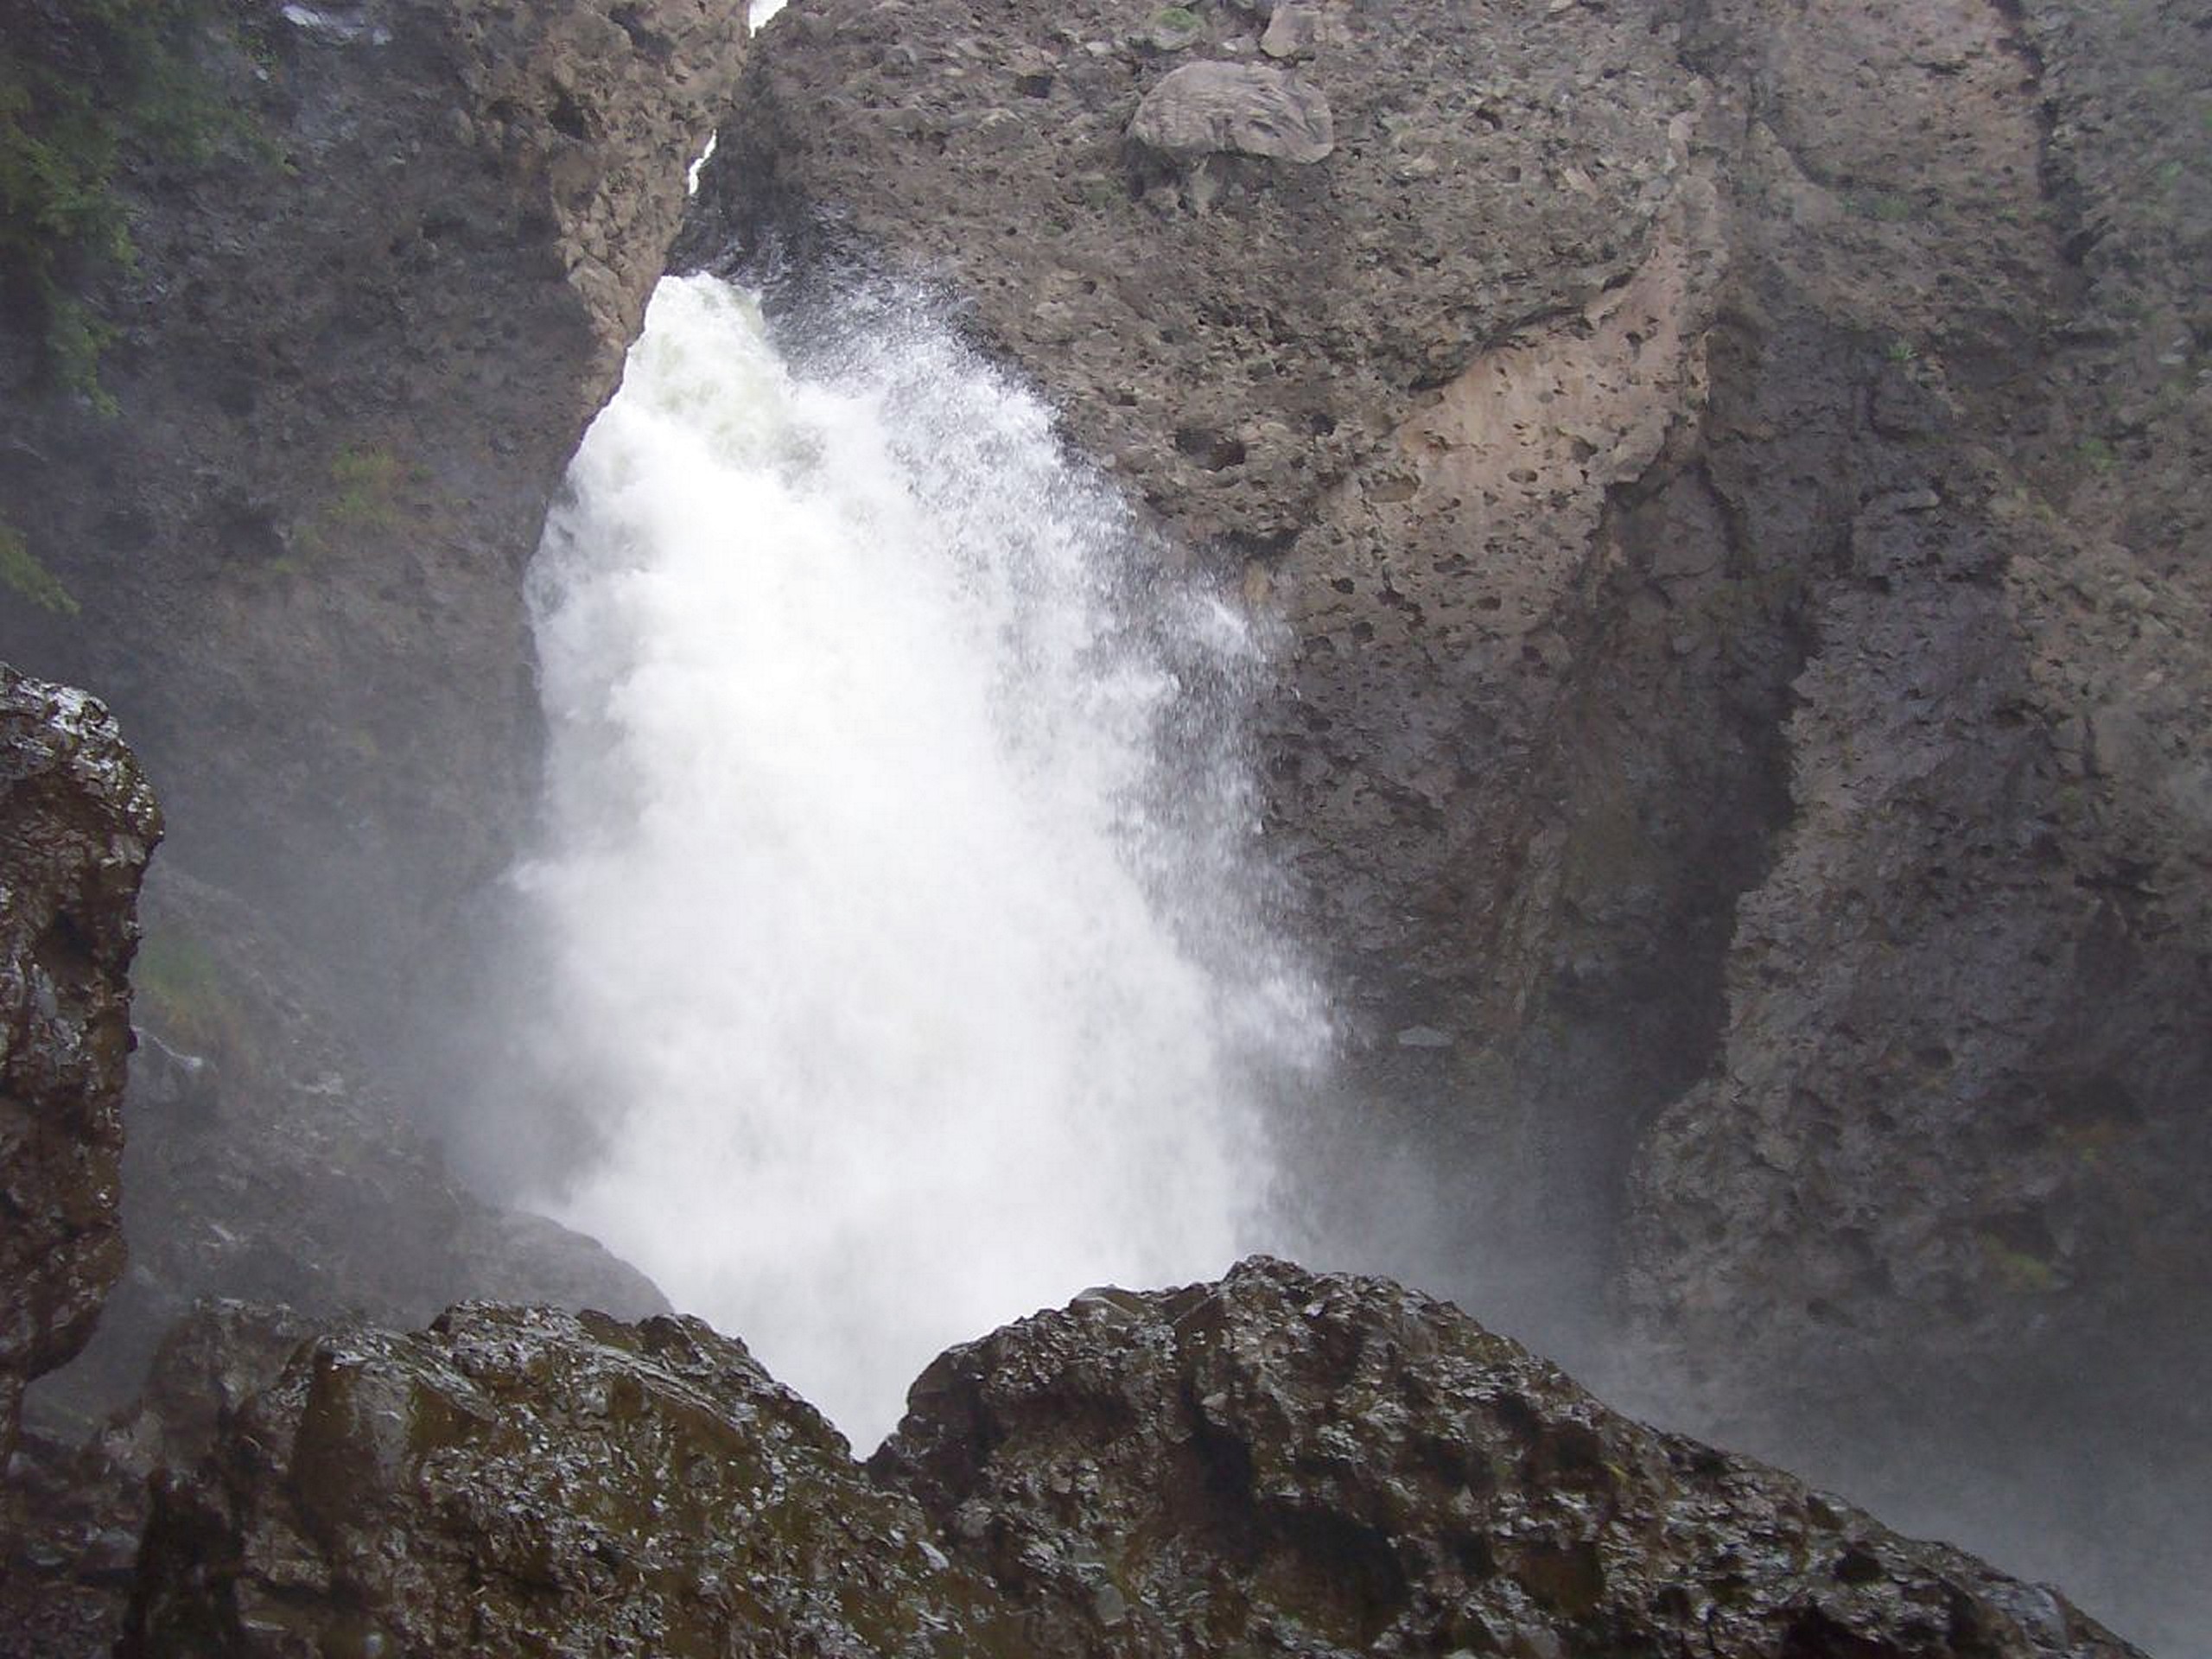 Piedra Falls Trail